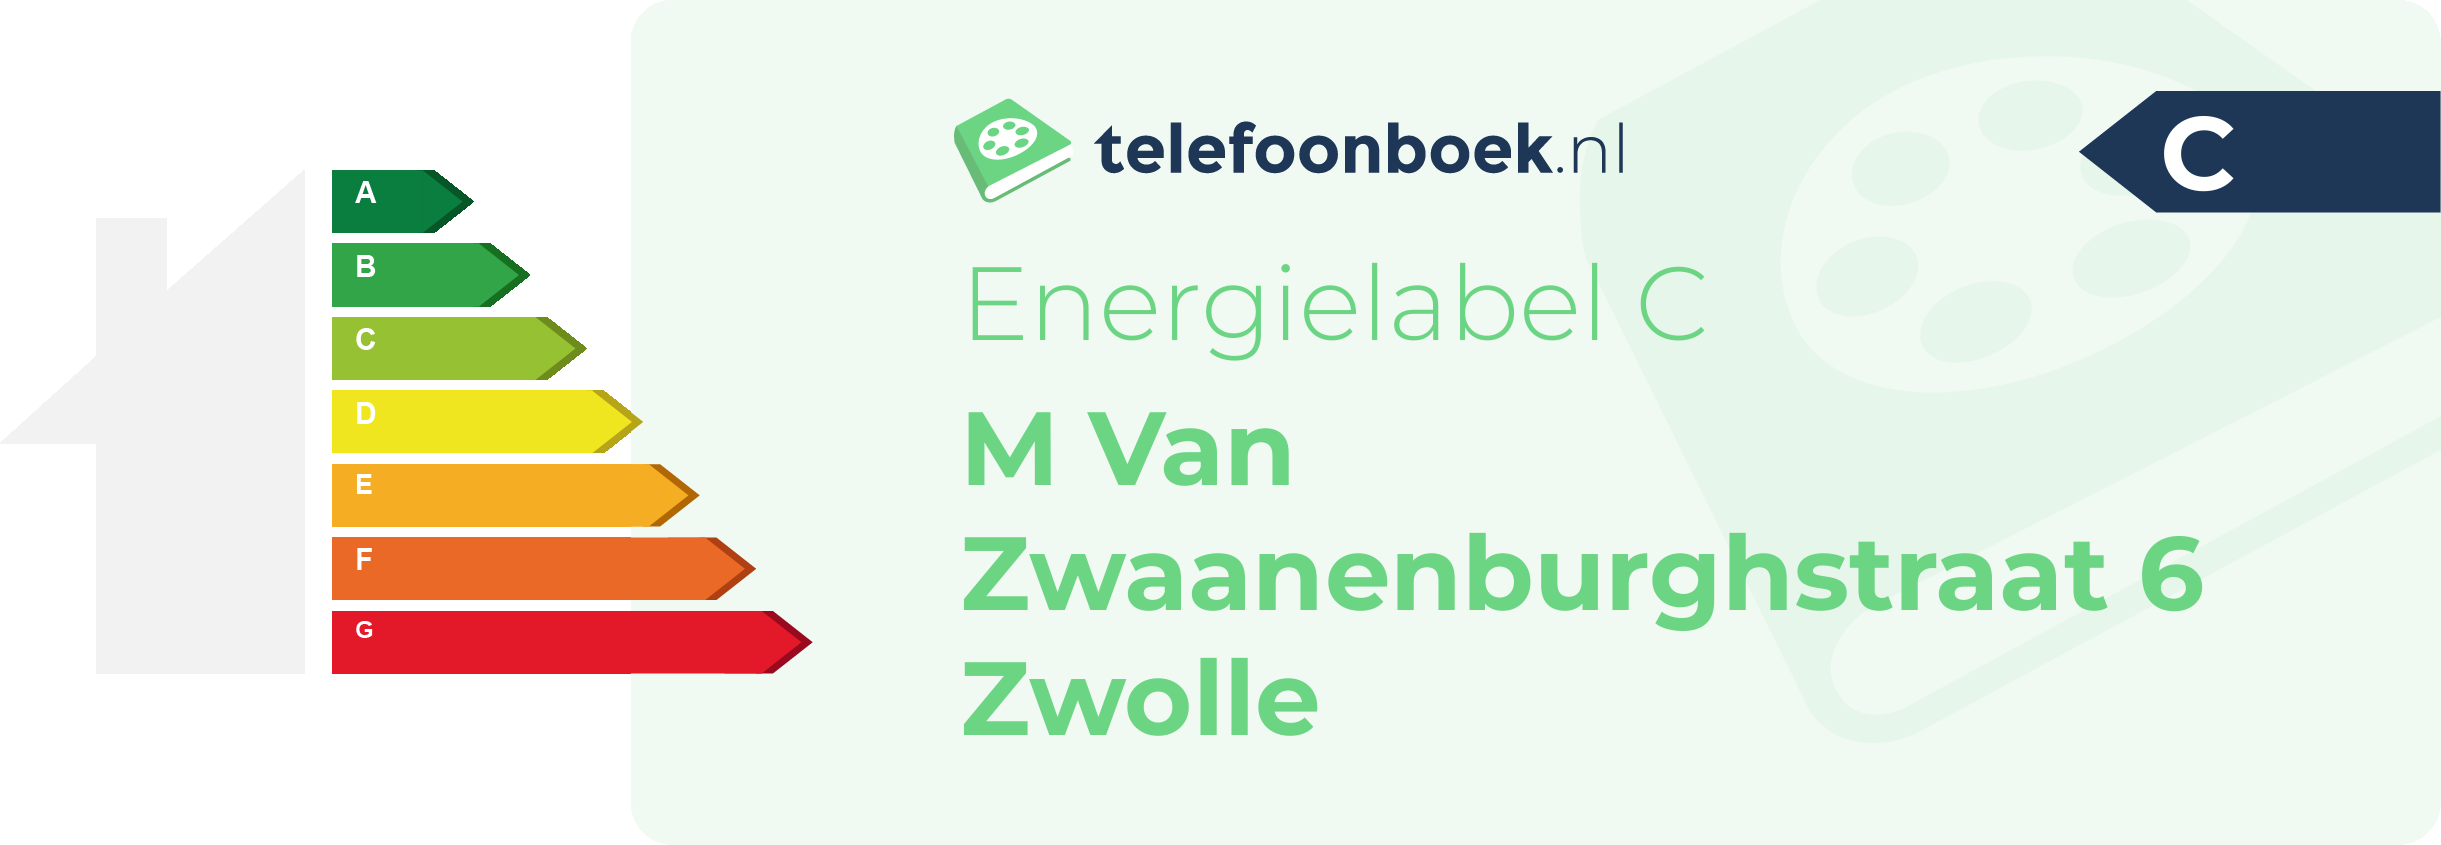 Energielabel M Van Zwaanenburghstraat 6 Zwolle